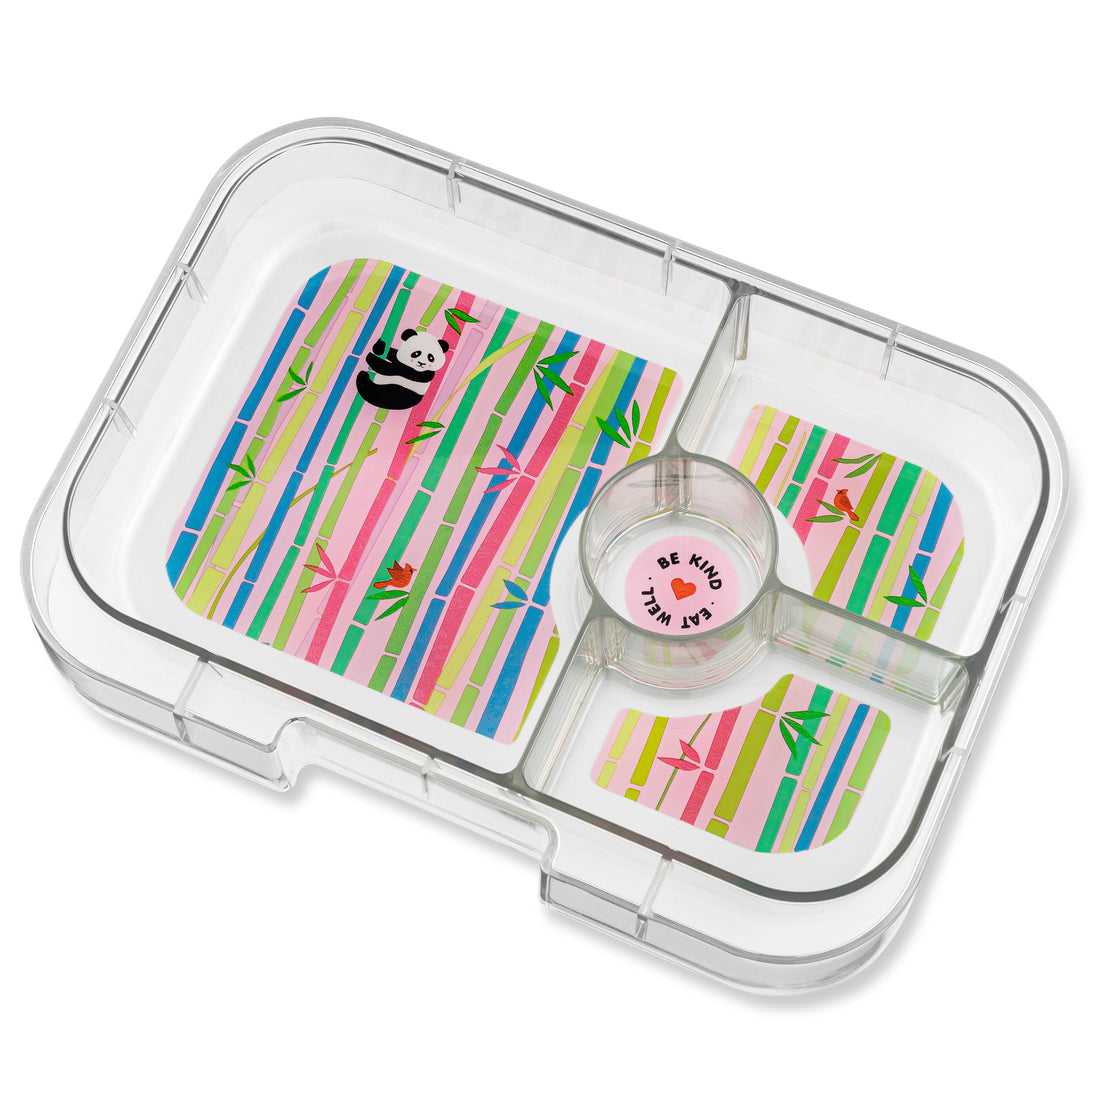 yumbox-panino-4-compartment-lunch-box-dreamy-purple-panda-yumb-dpii202110p- (2)